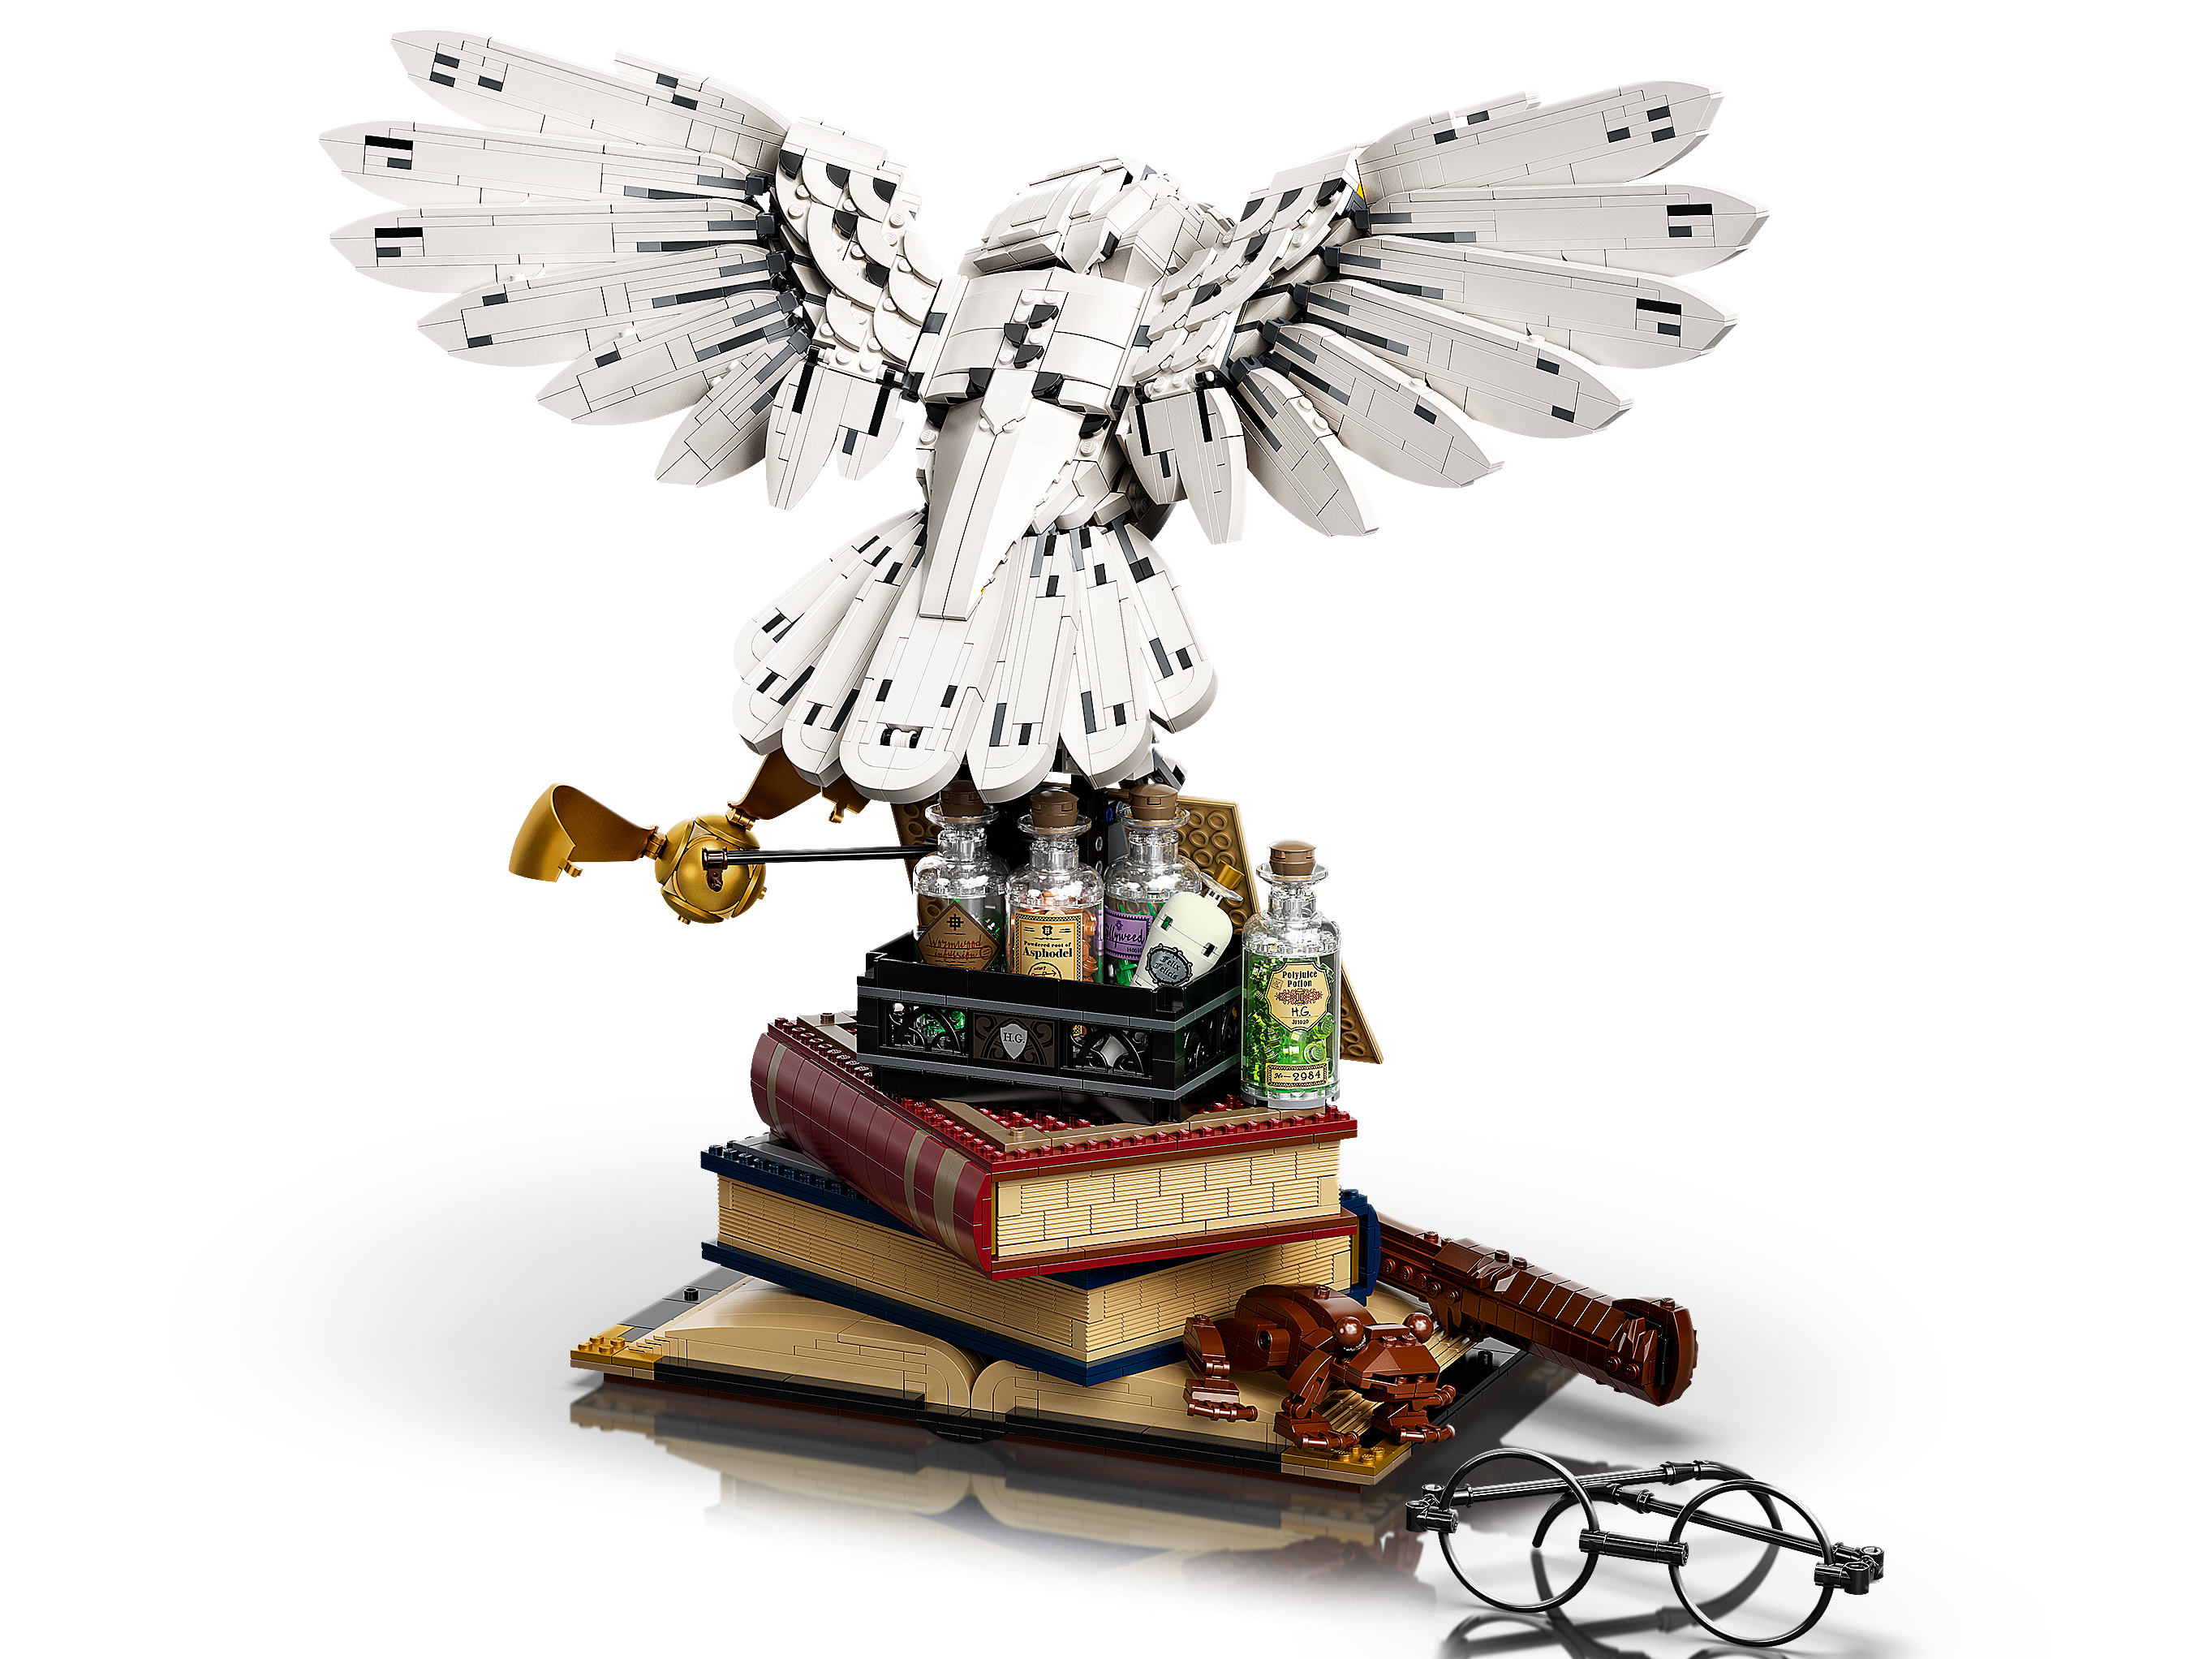 LEGO Harry Potter - Ícones de Hogwarts - Edição de Colecionador - 76391 -  superlegalbrinquedos